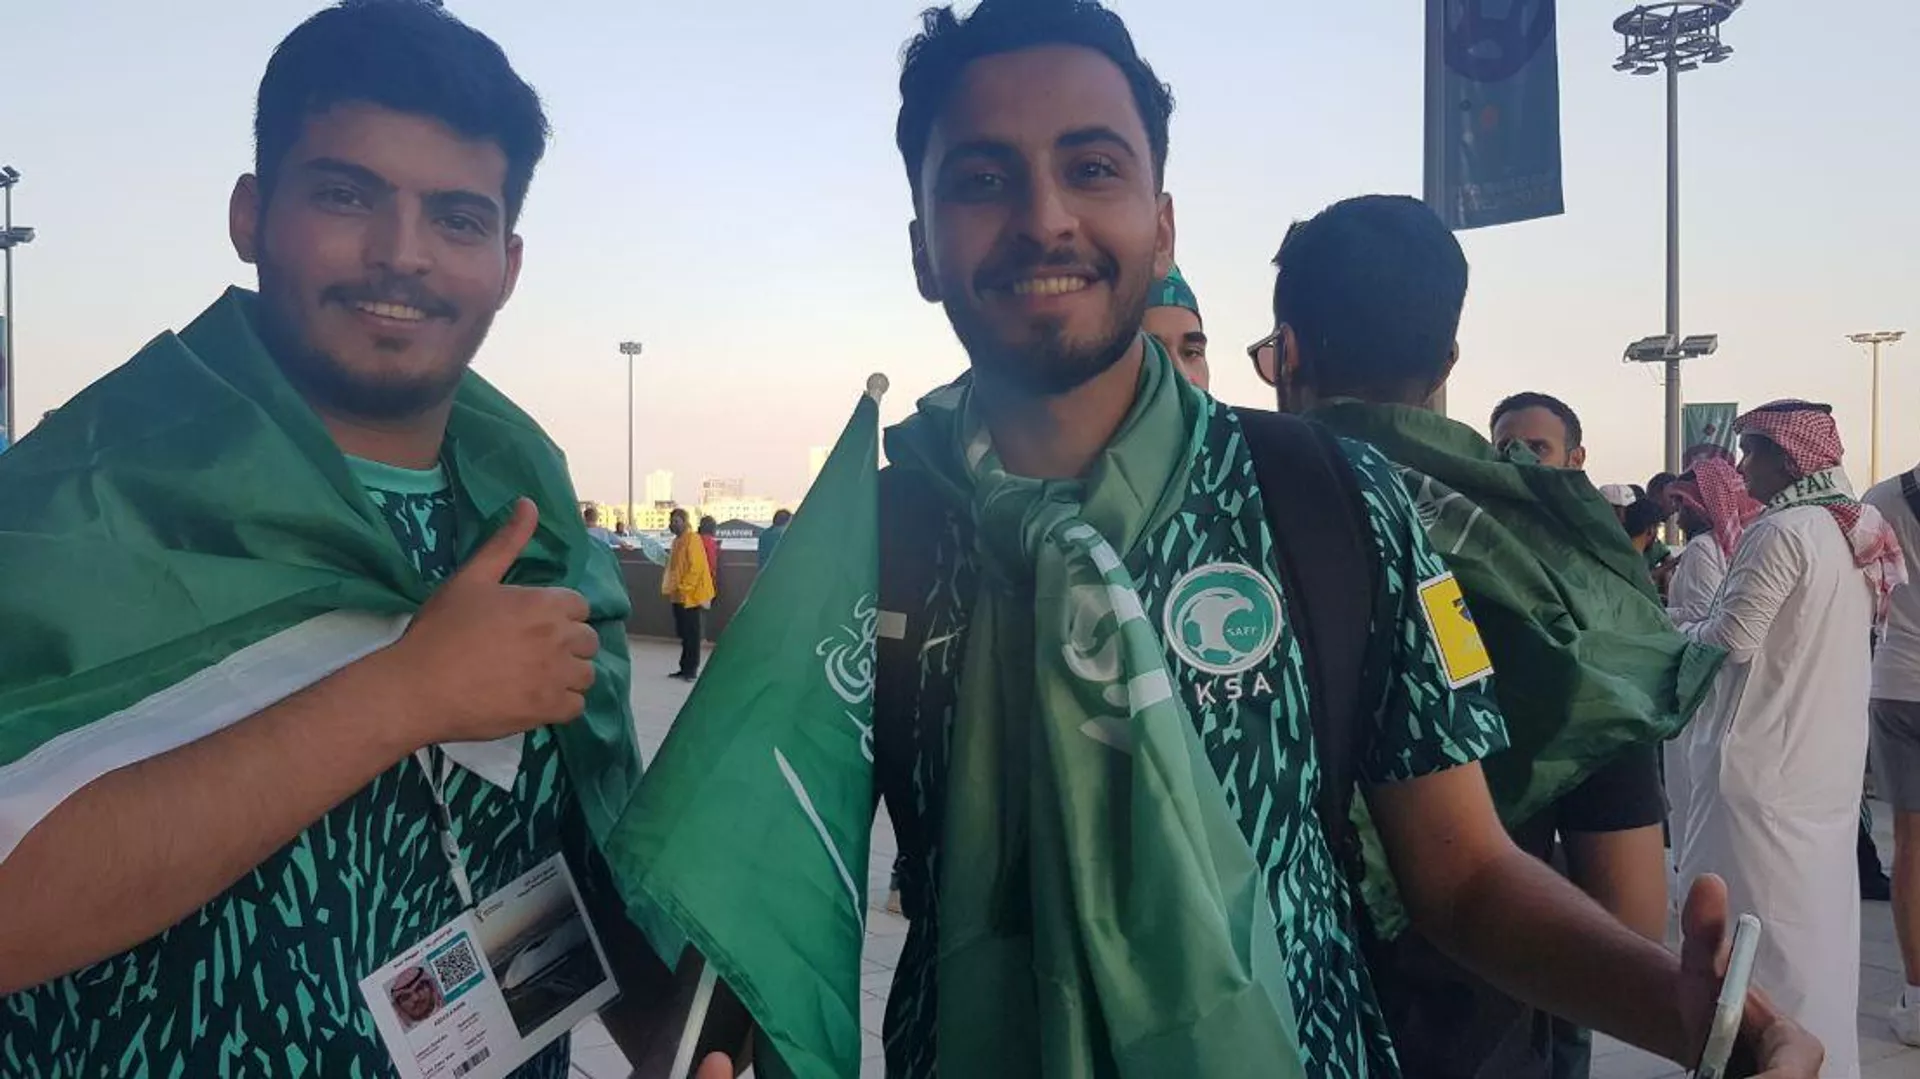 كيف تعامل المشجعون العرب مع الإعلام الإسرائيلي في قطر